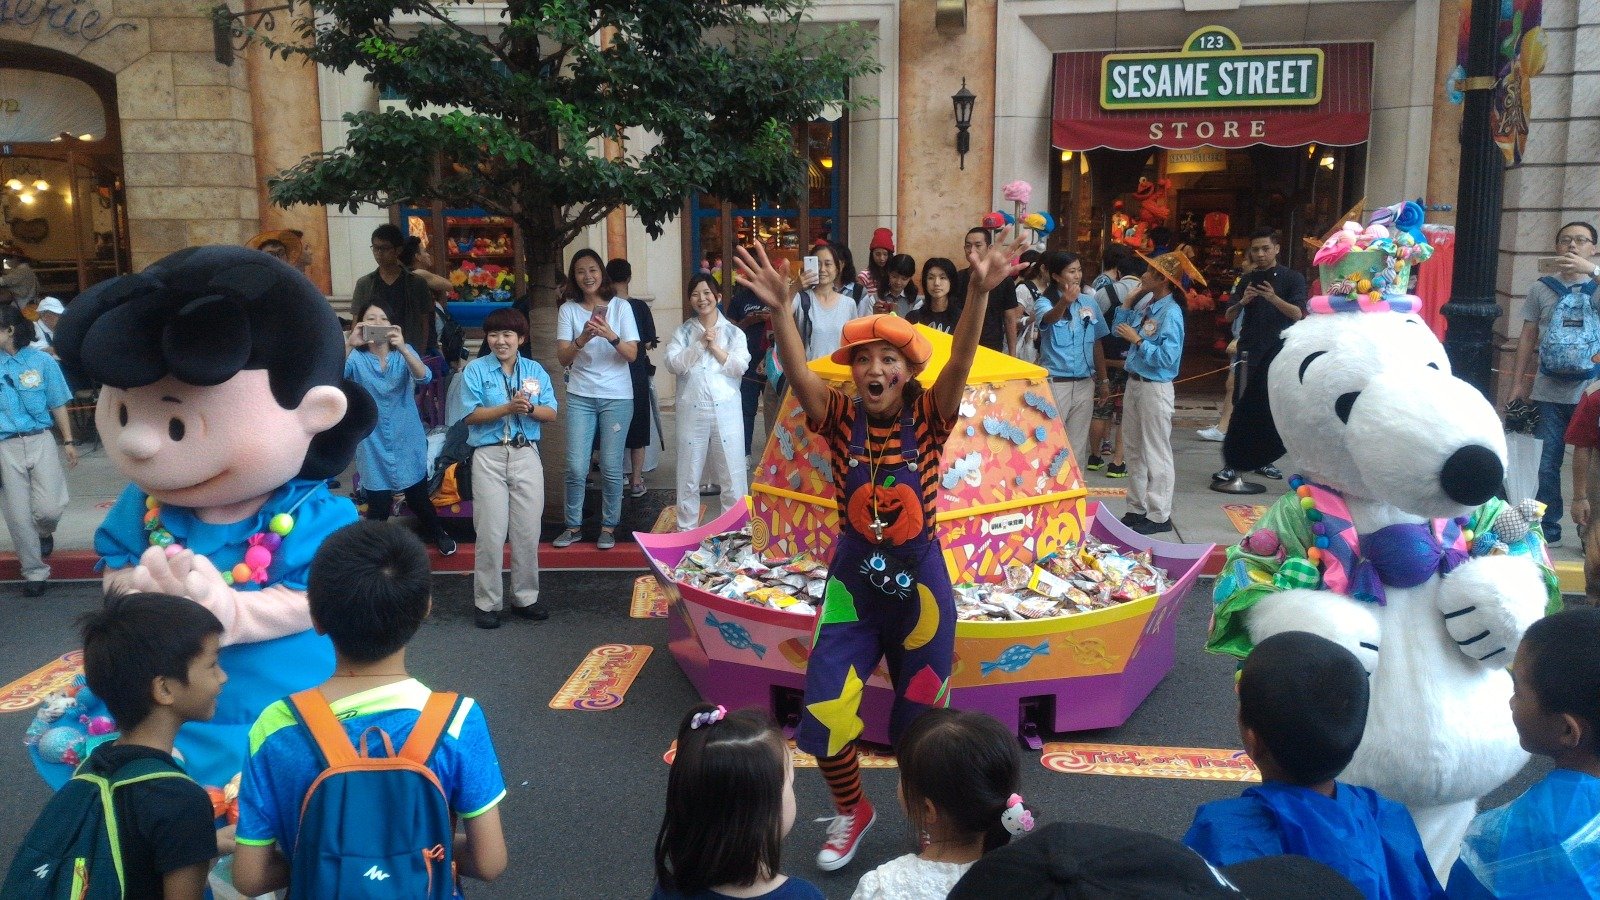 万圣节不一定是要吓人的，日本环球影城在白天时，很贴心地准备一些派送礼物的活动， 逗乐不少小孩。